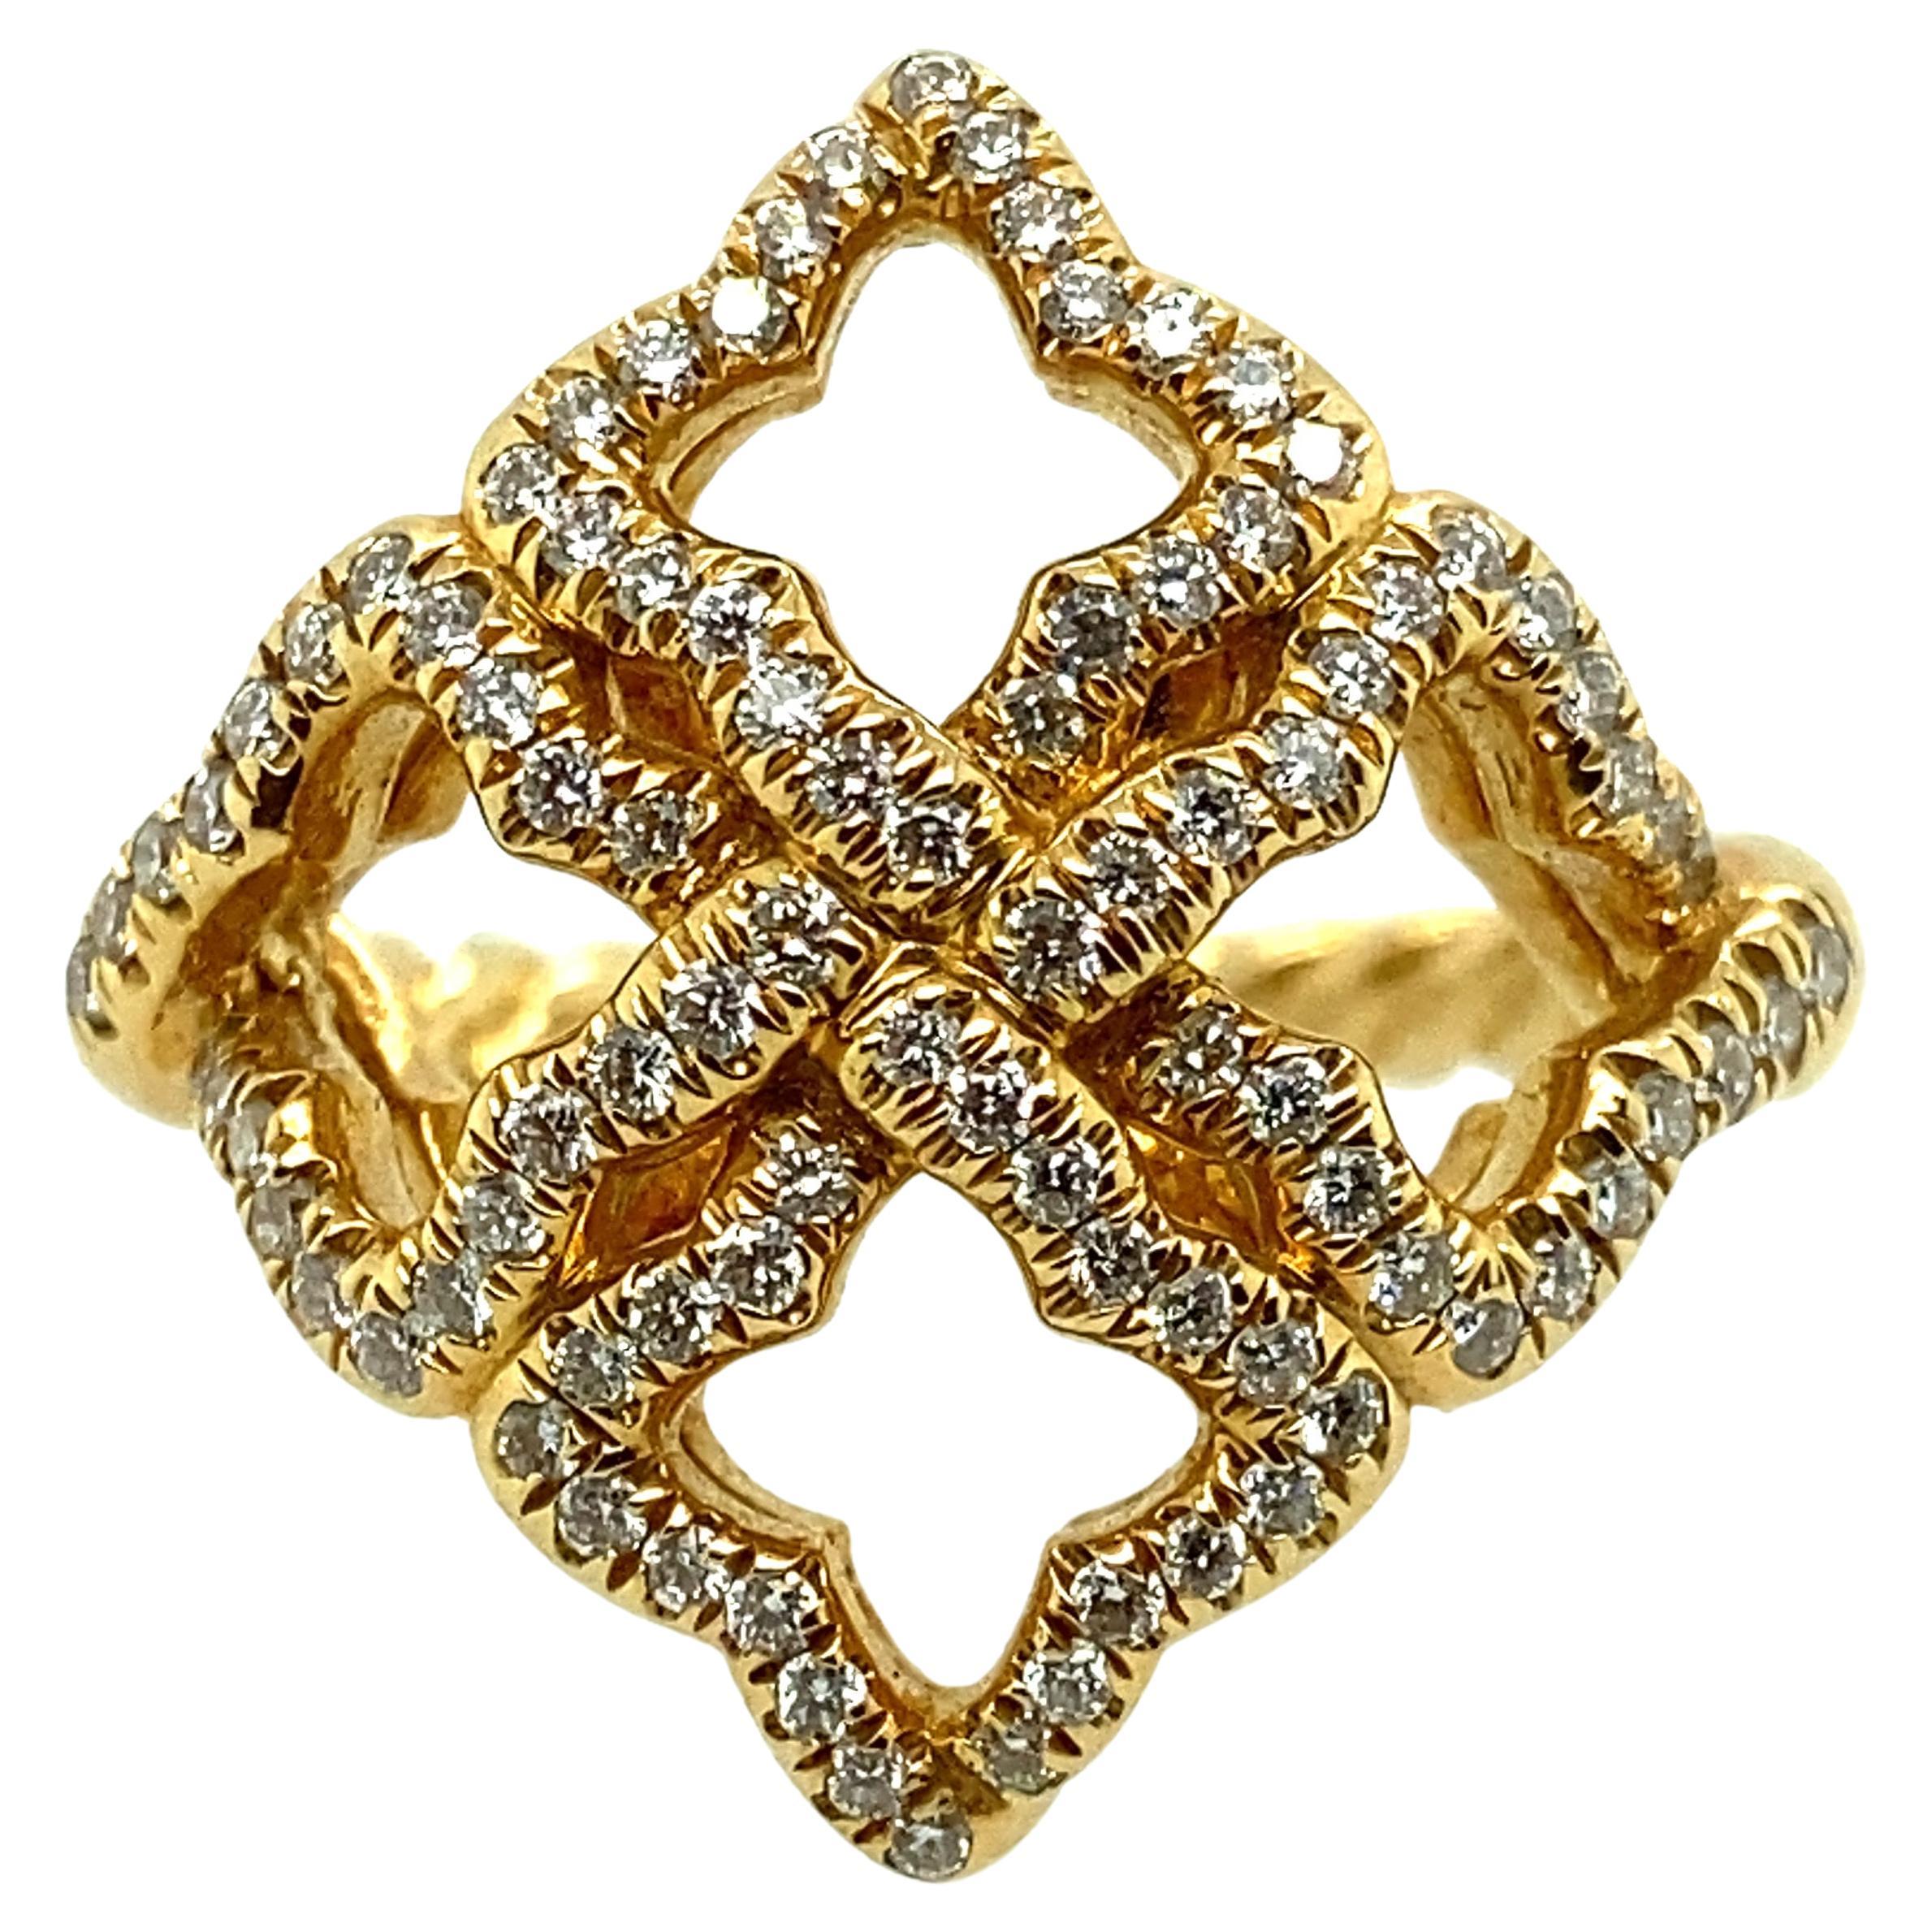 David Yurman Diamond Quatrefoil Ring in 18 Karat Gold